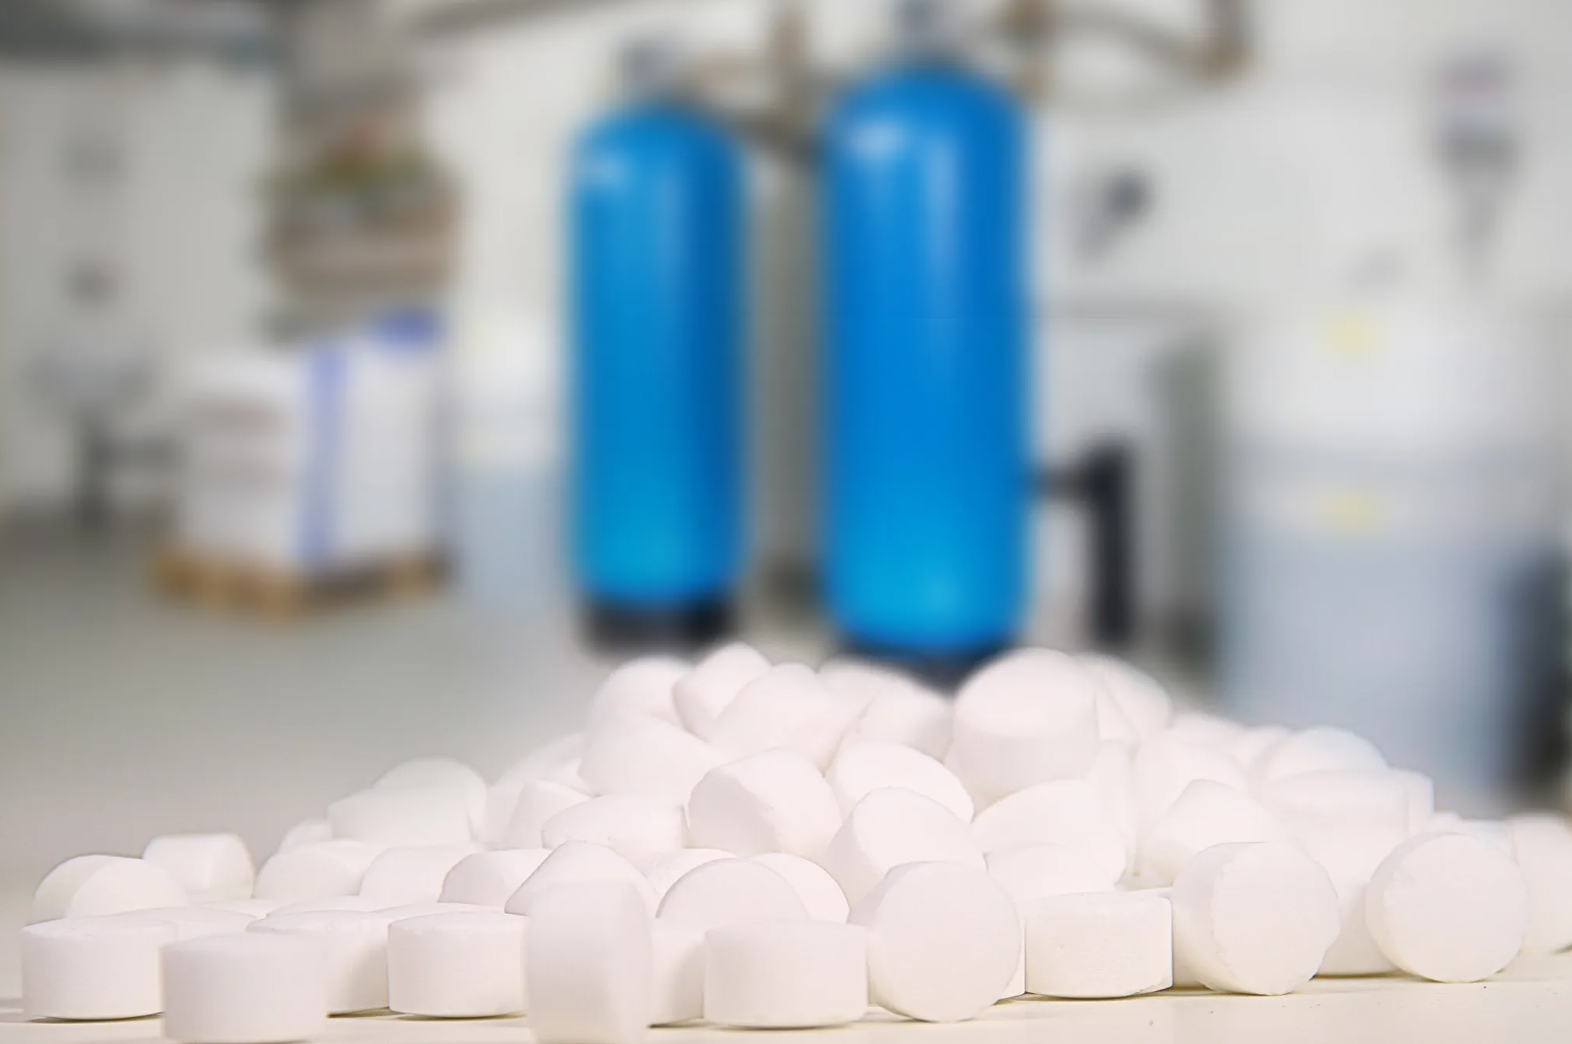 Eine Nahaufnahme einer Gruppe weißer zylindrischer Regenit-Siedesalztabletten von K+S im Fokus, mit verschwommenen blauen Gasflaschen im Hintergrund in einer Laborumgebung.